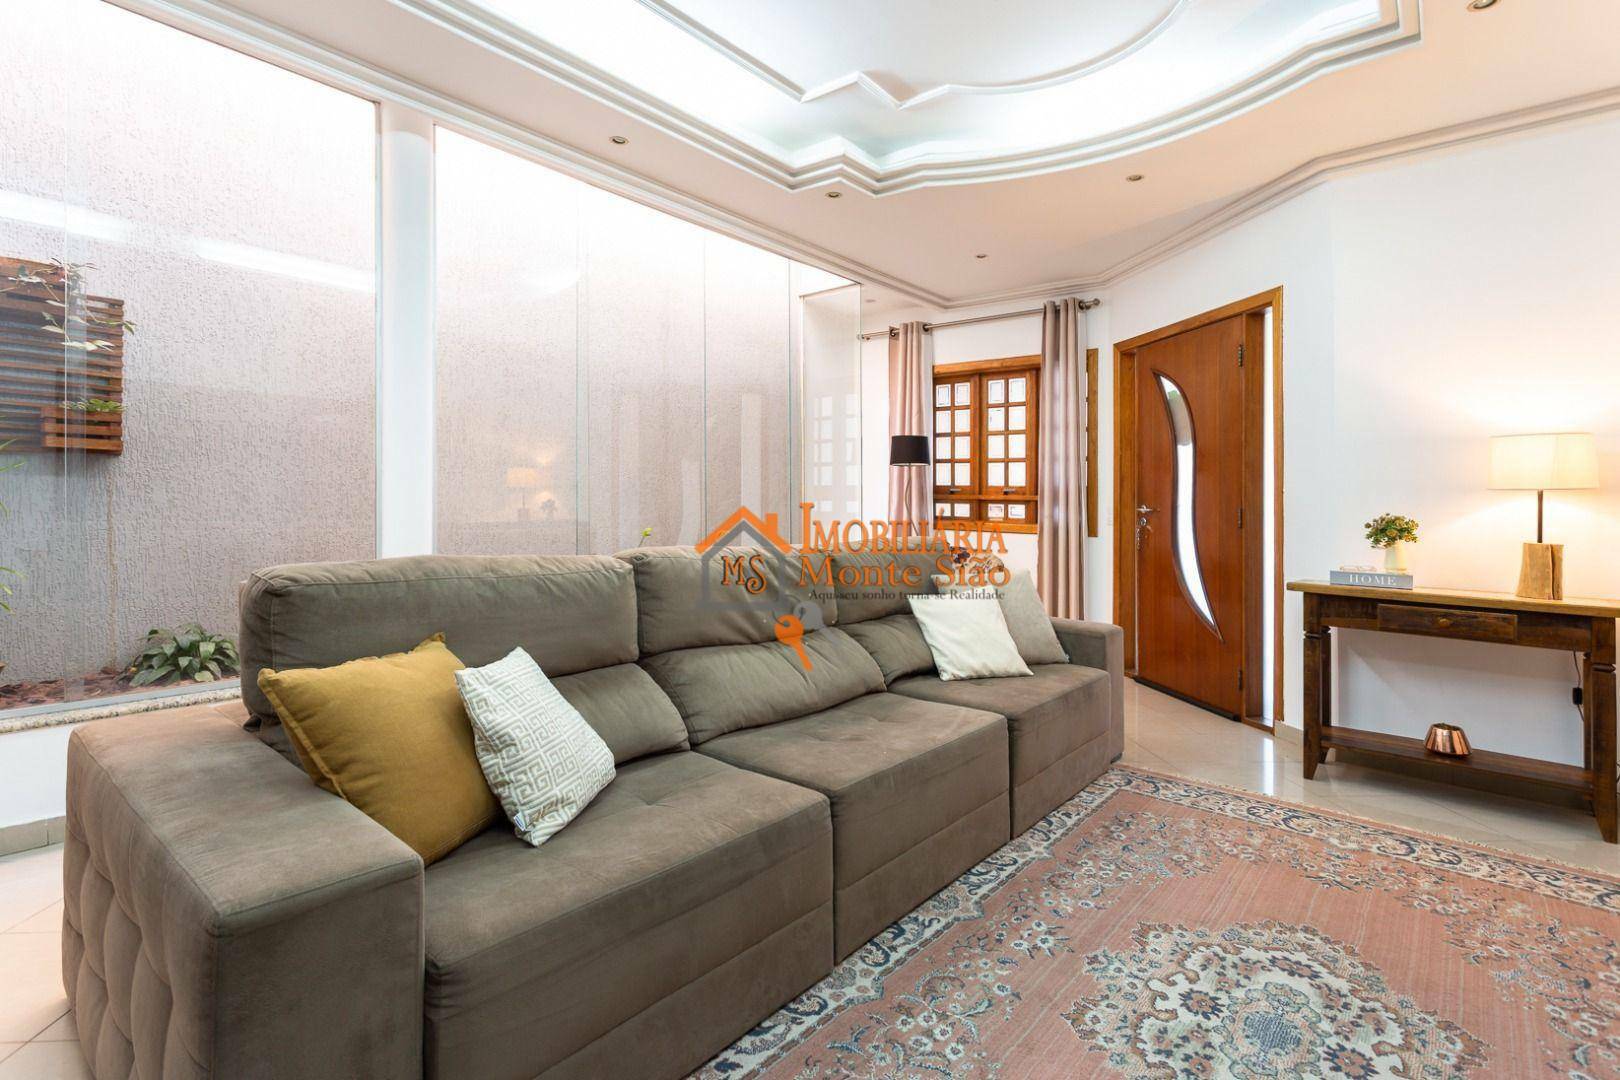 Sobrado com 3 dormitórios à venda, 234 m² por R$ 600.000,00 - Parque Continental I - Guarulhos/SP